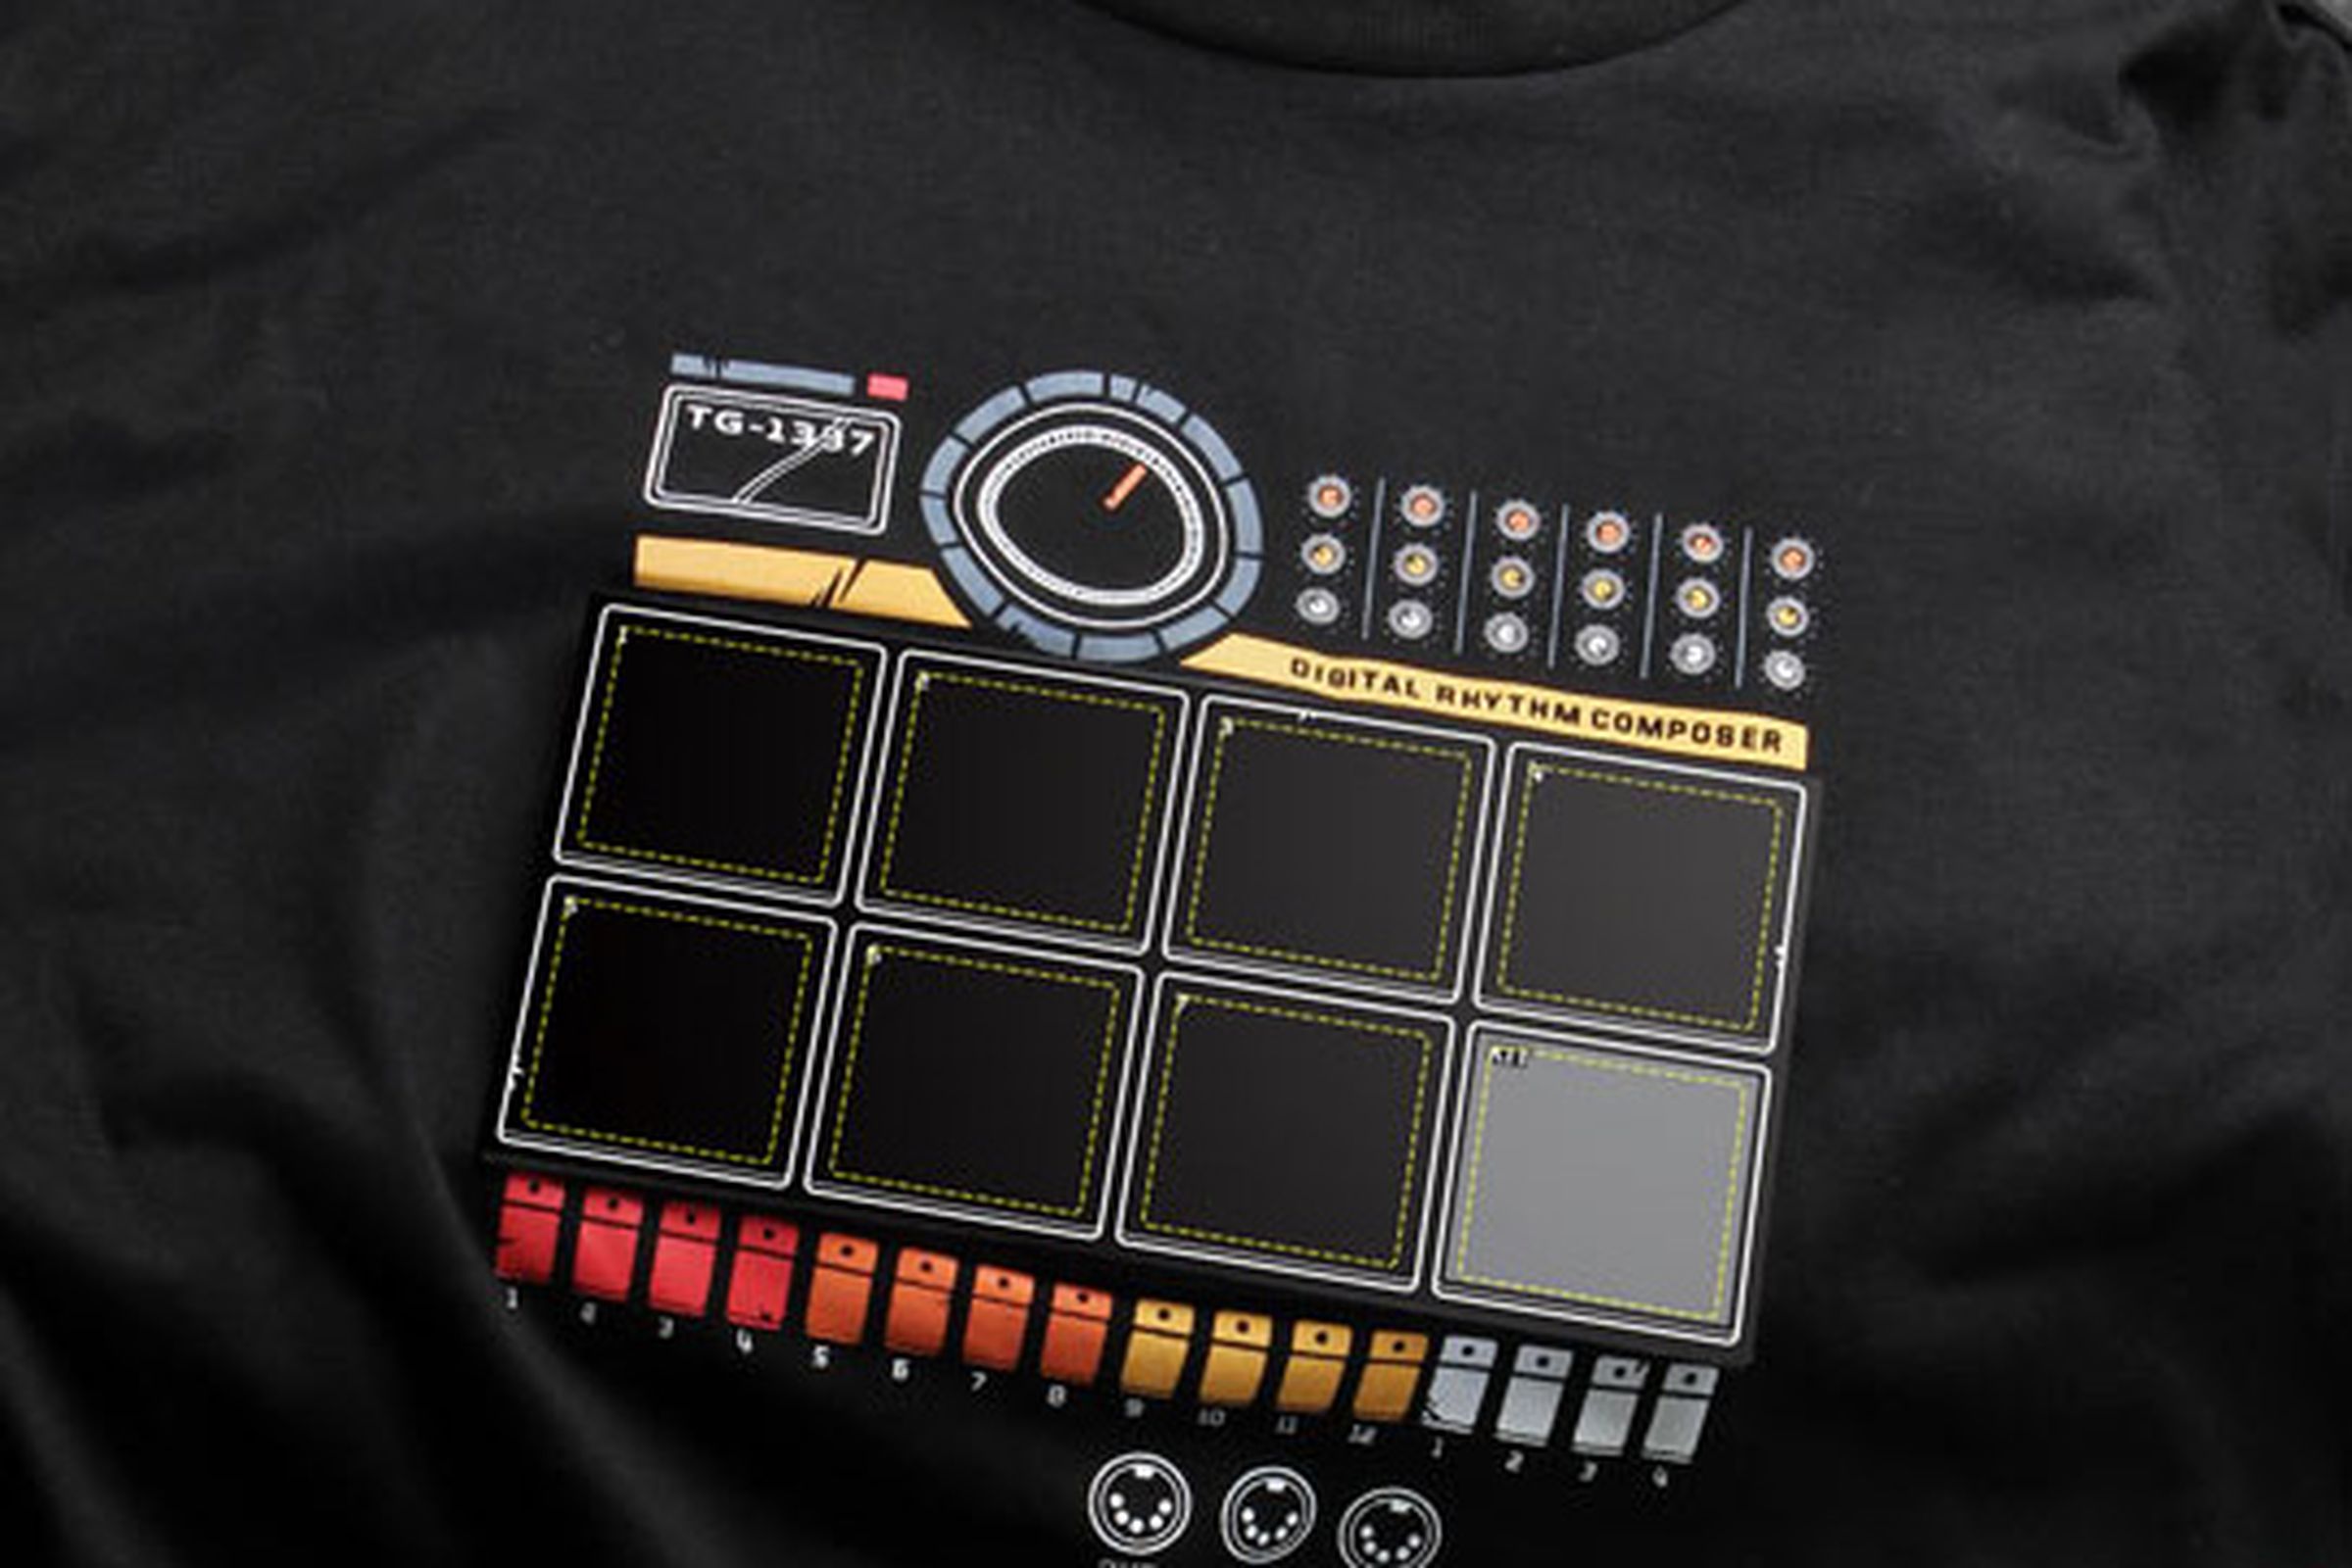 Drum Machine T-Shirt